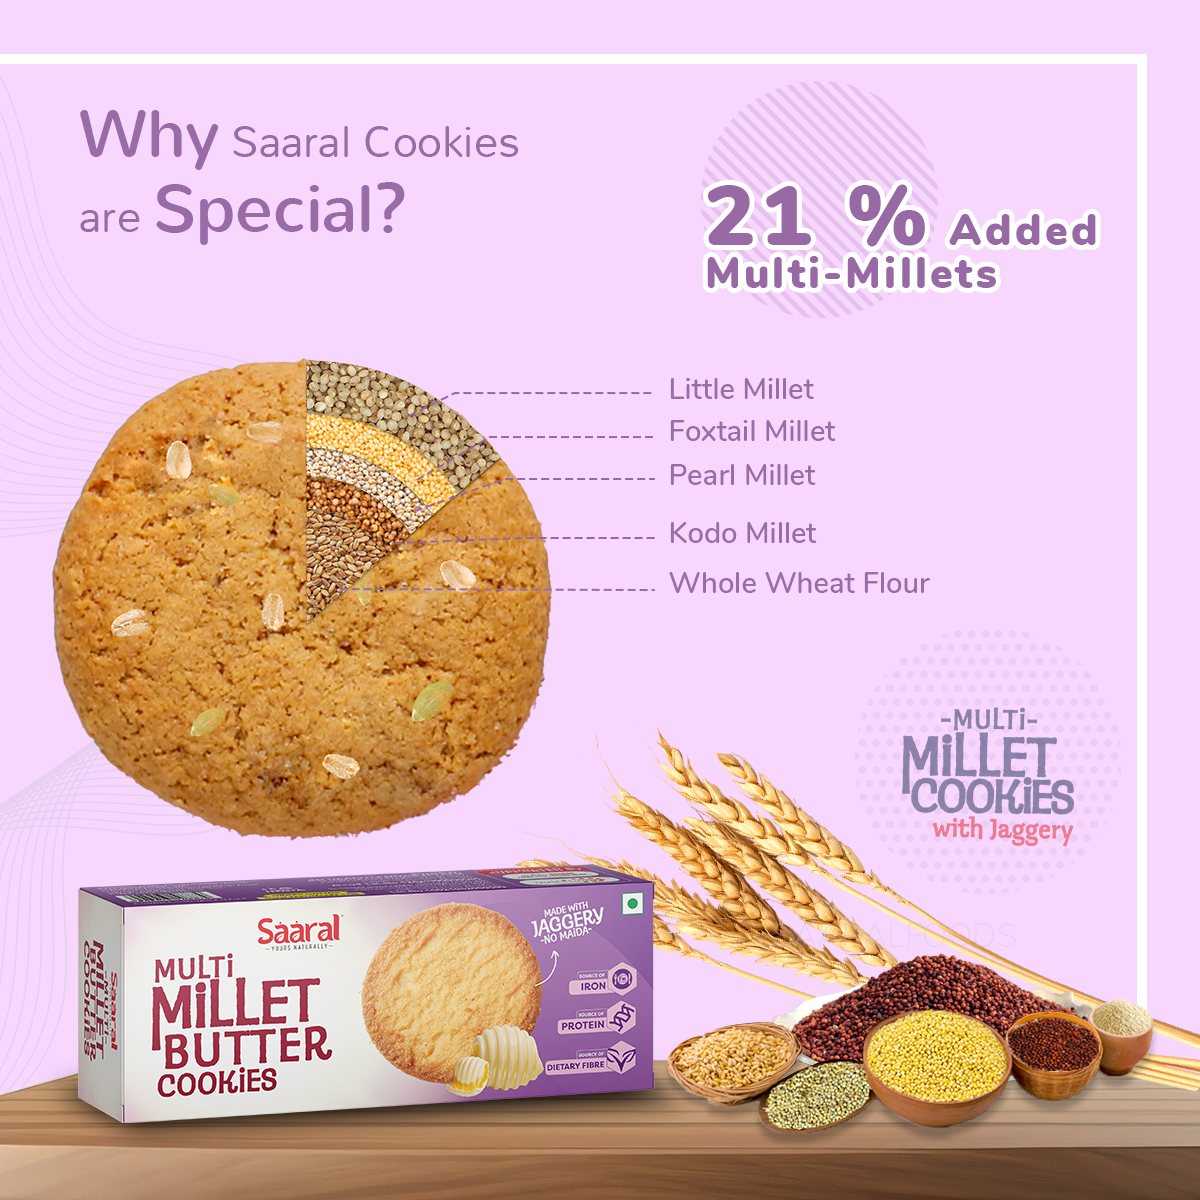 Saaral Multi Millet Butter Cookies